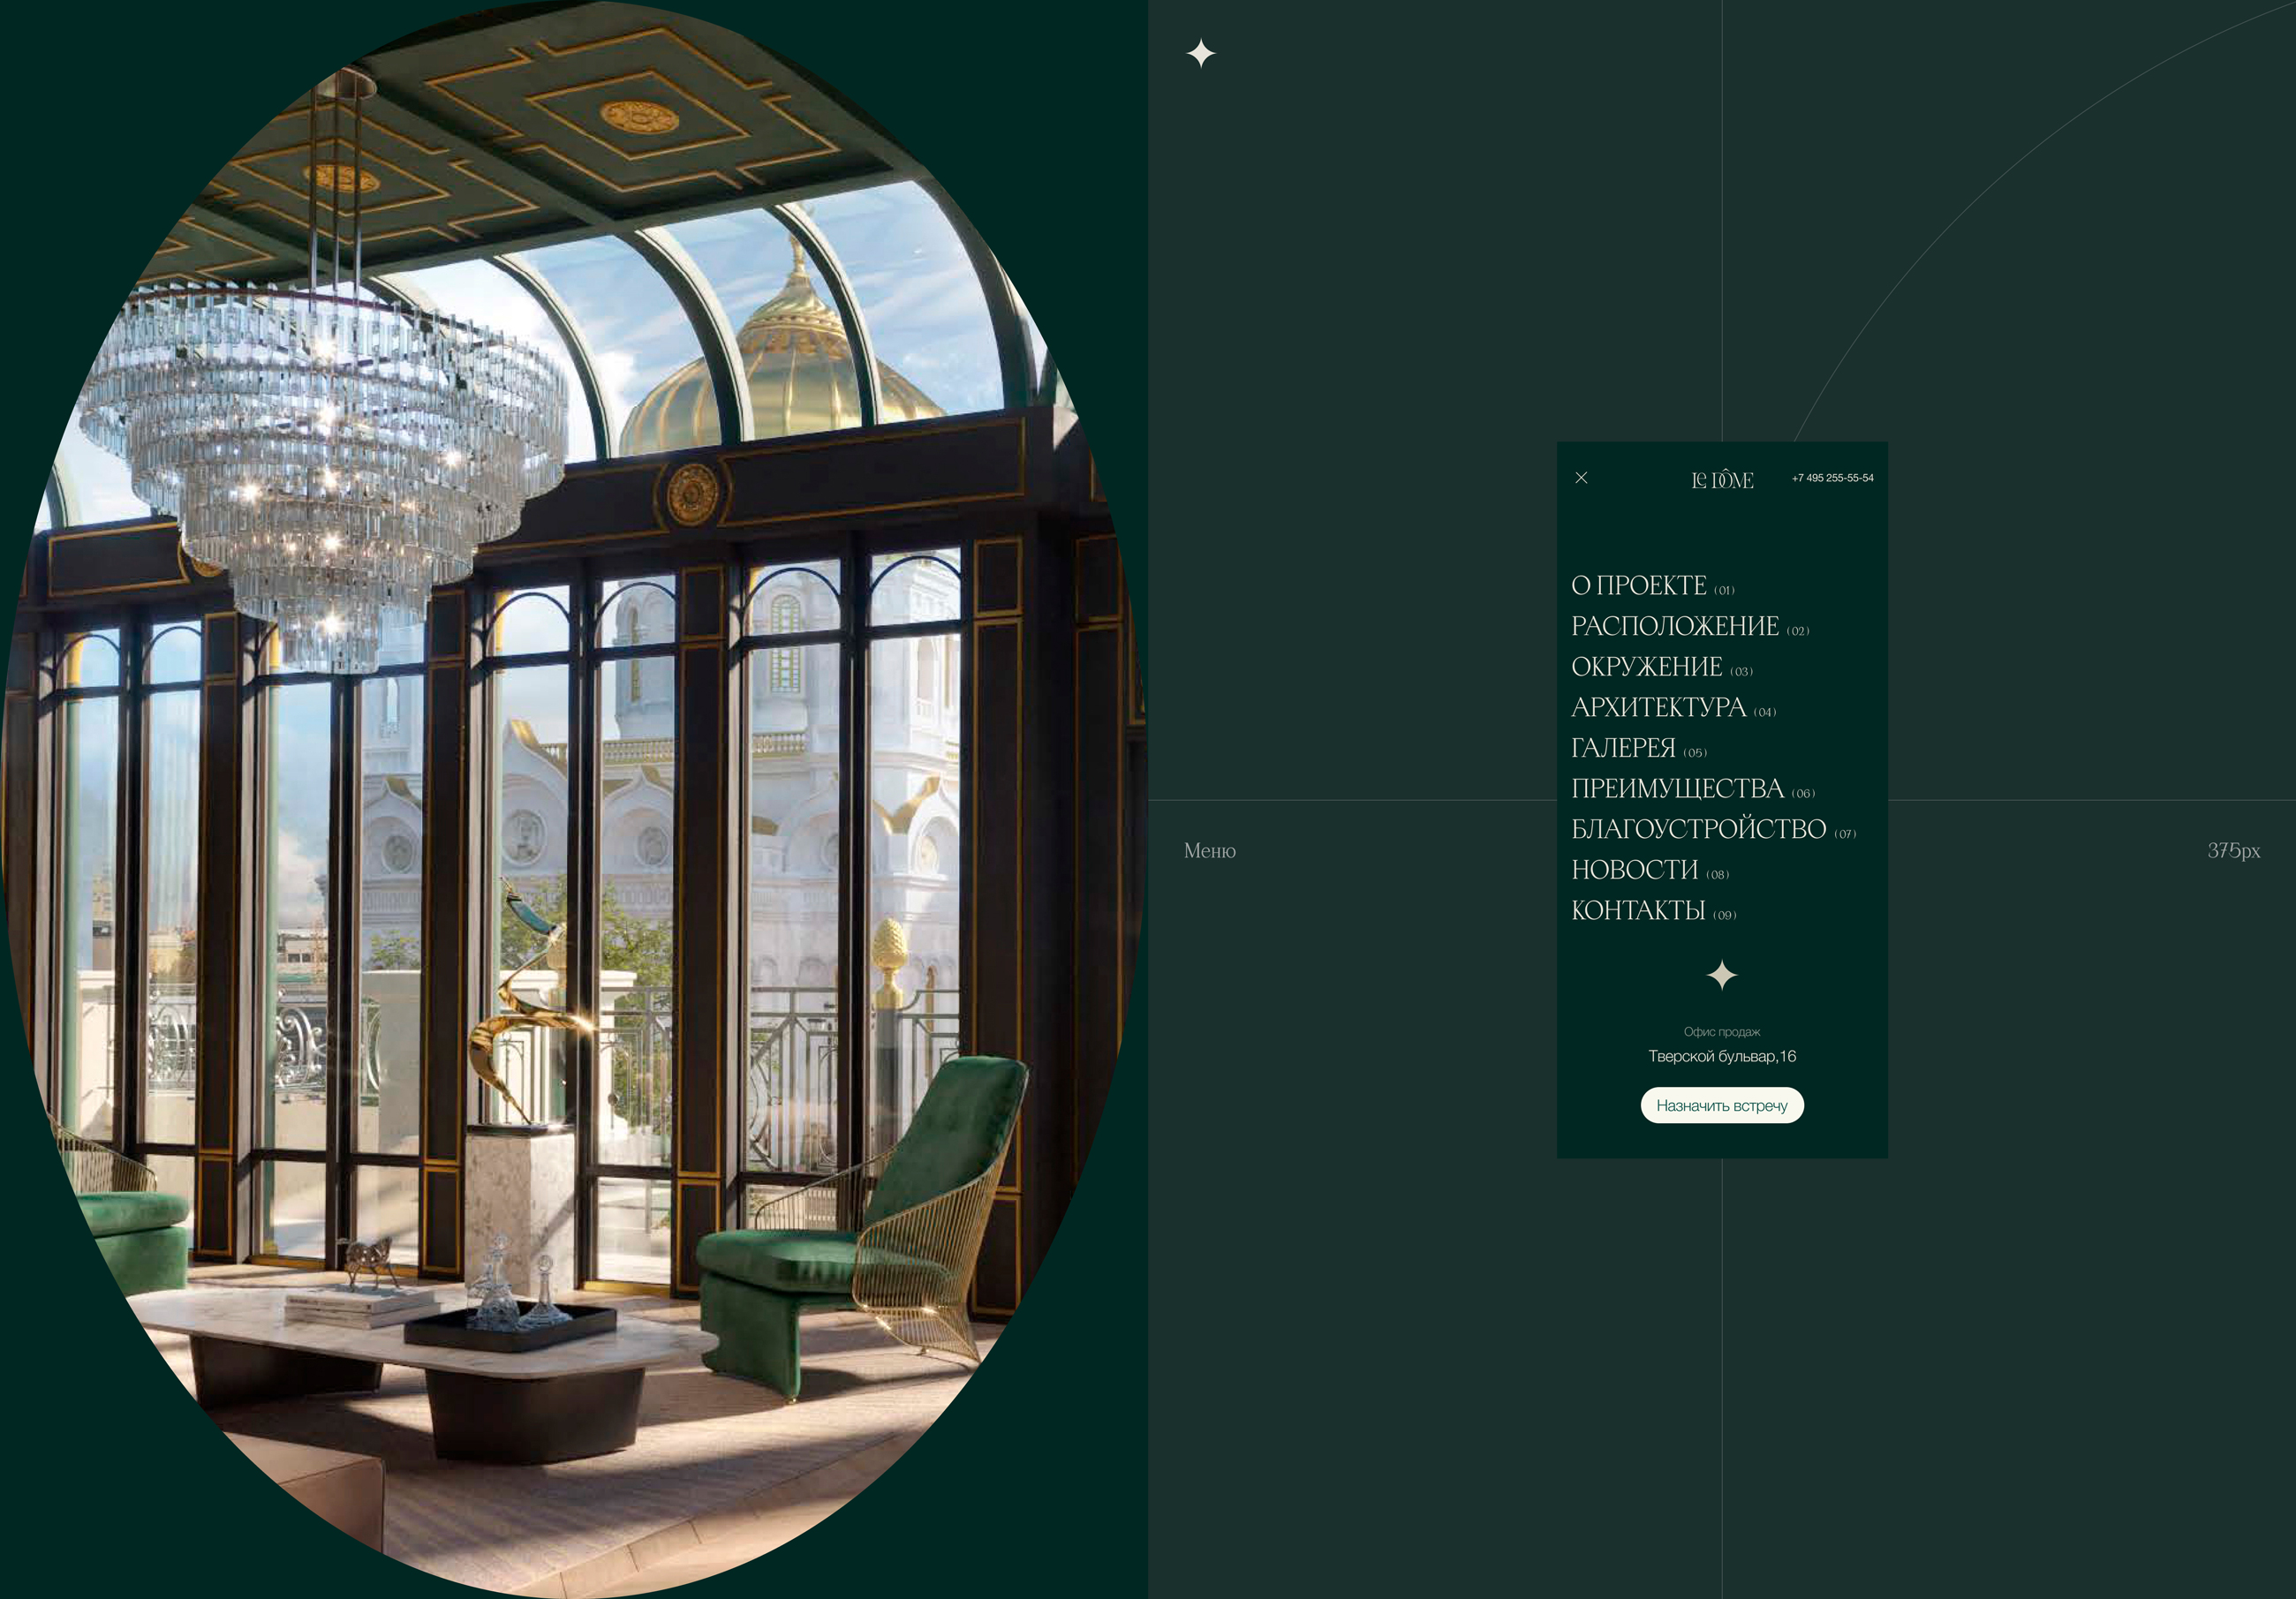 Le Dôme | Промо-сайт для клубного дома делюкс-класса — Изображение №11 — Интерфейсы на Dprofile